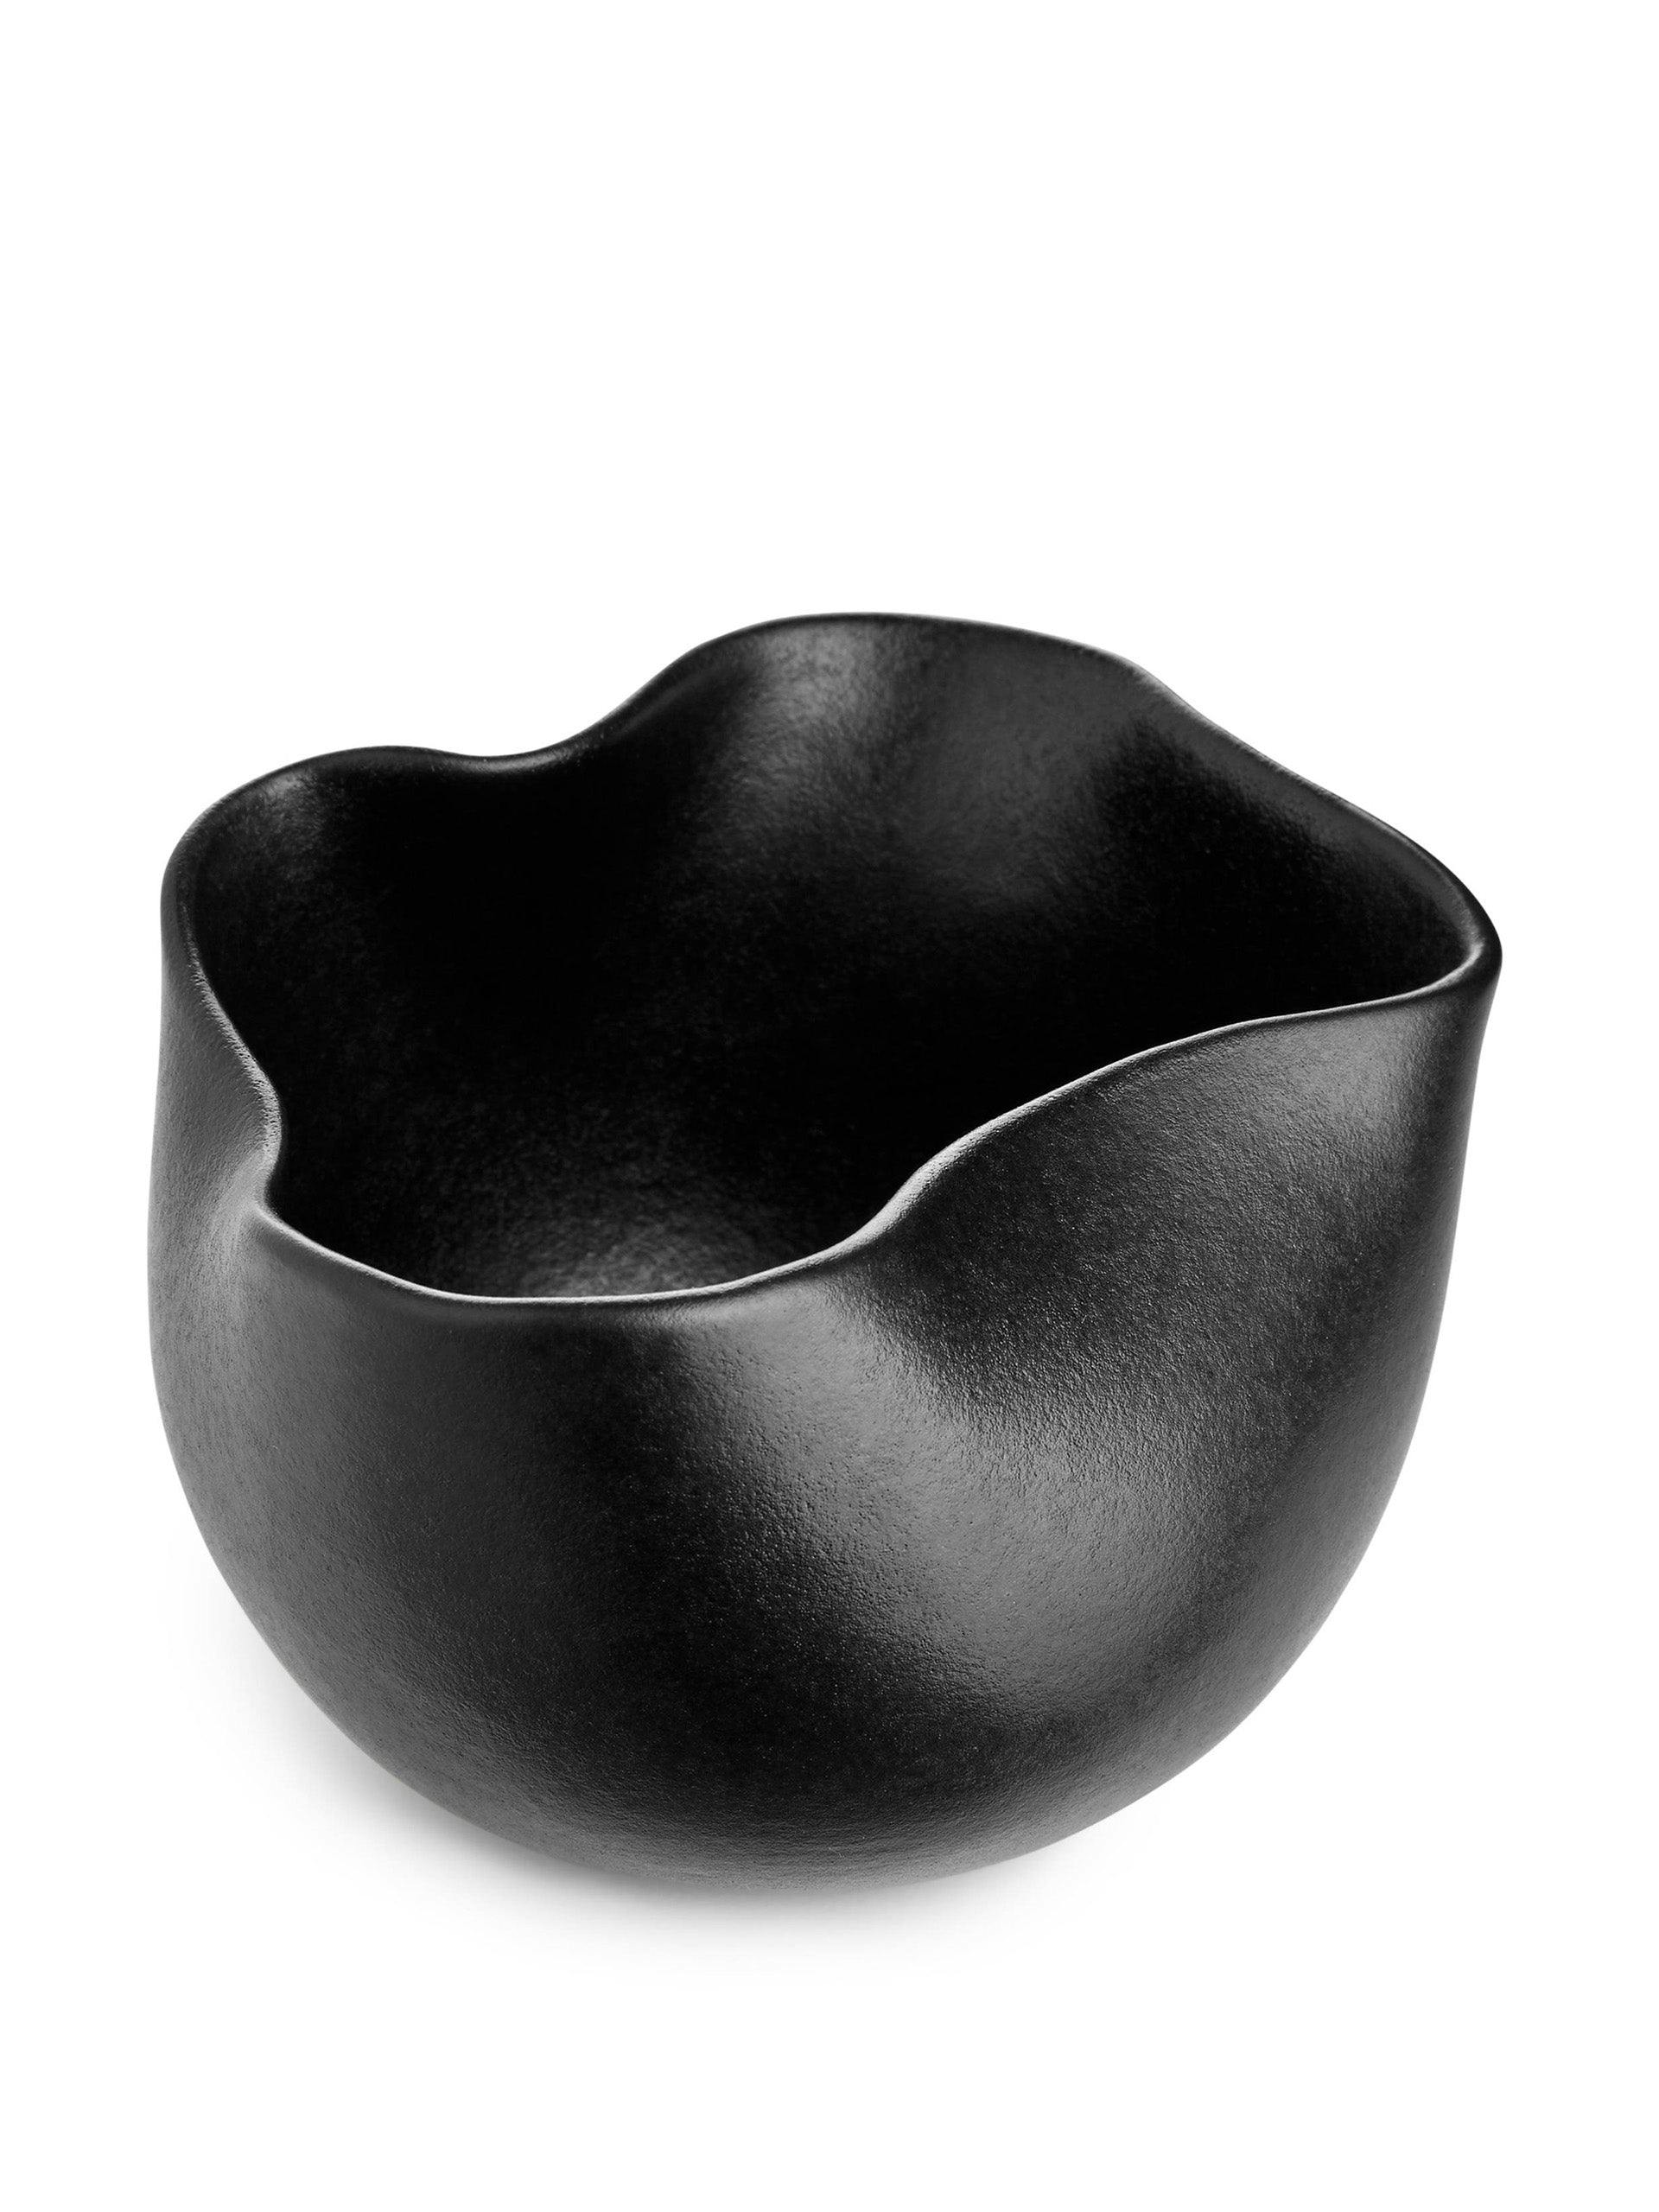 Black terracotta bowl